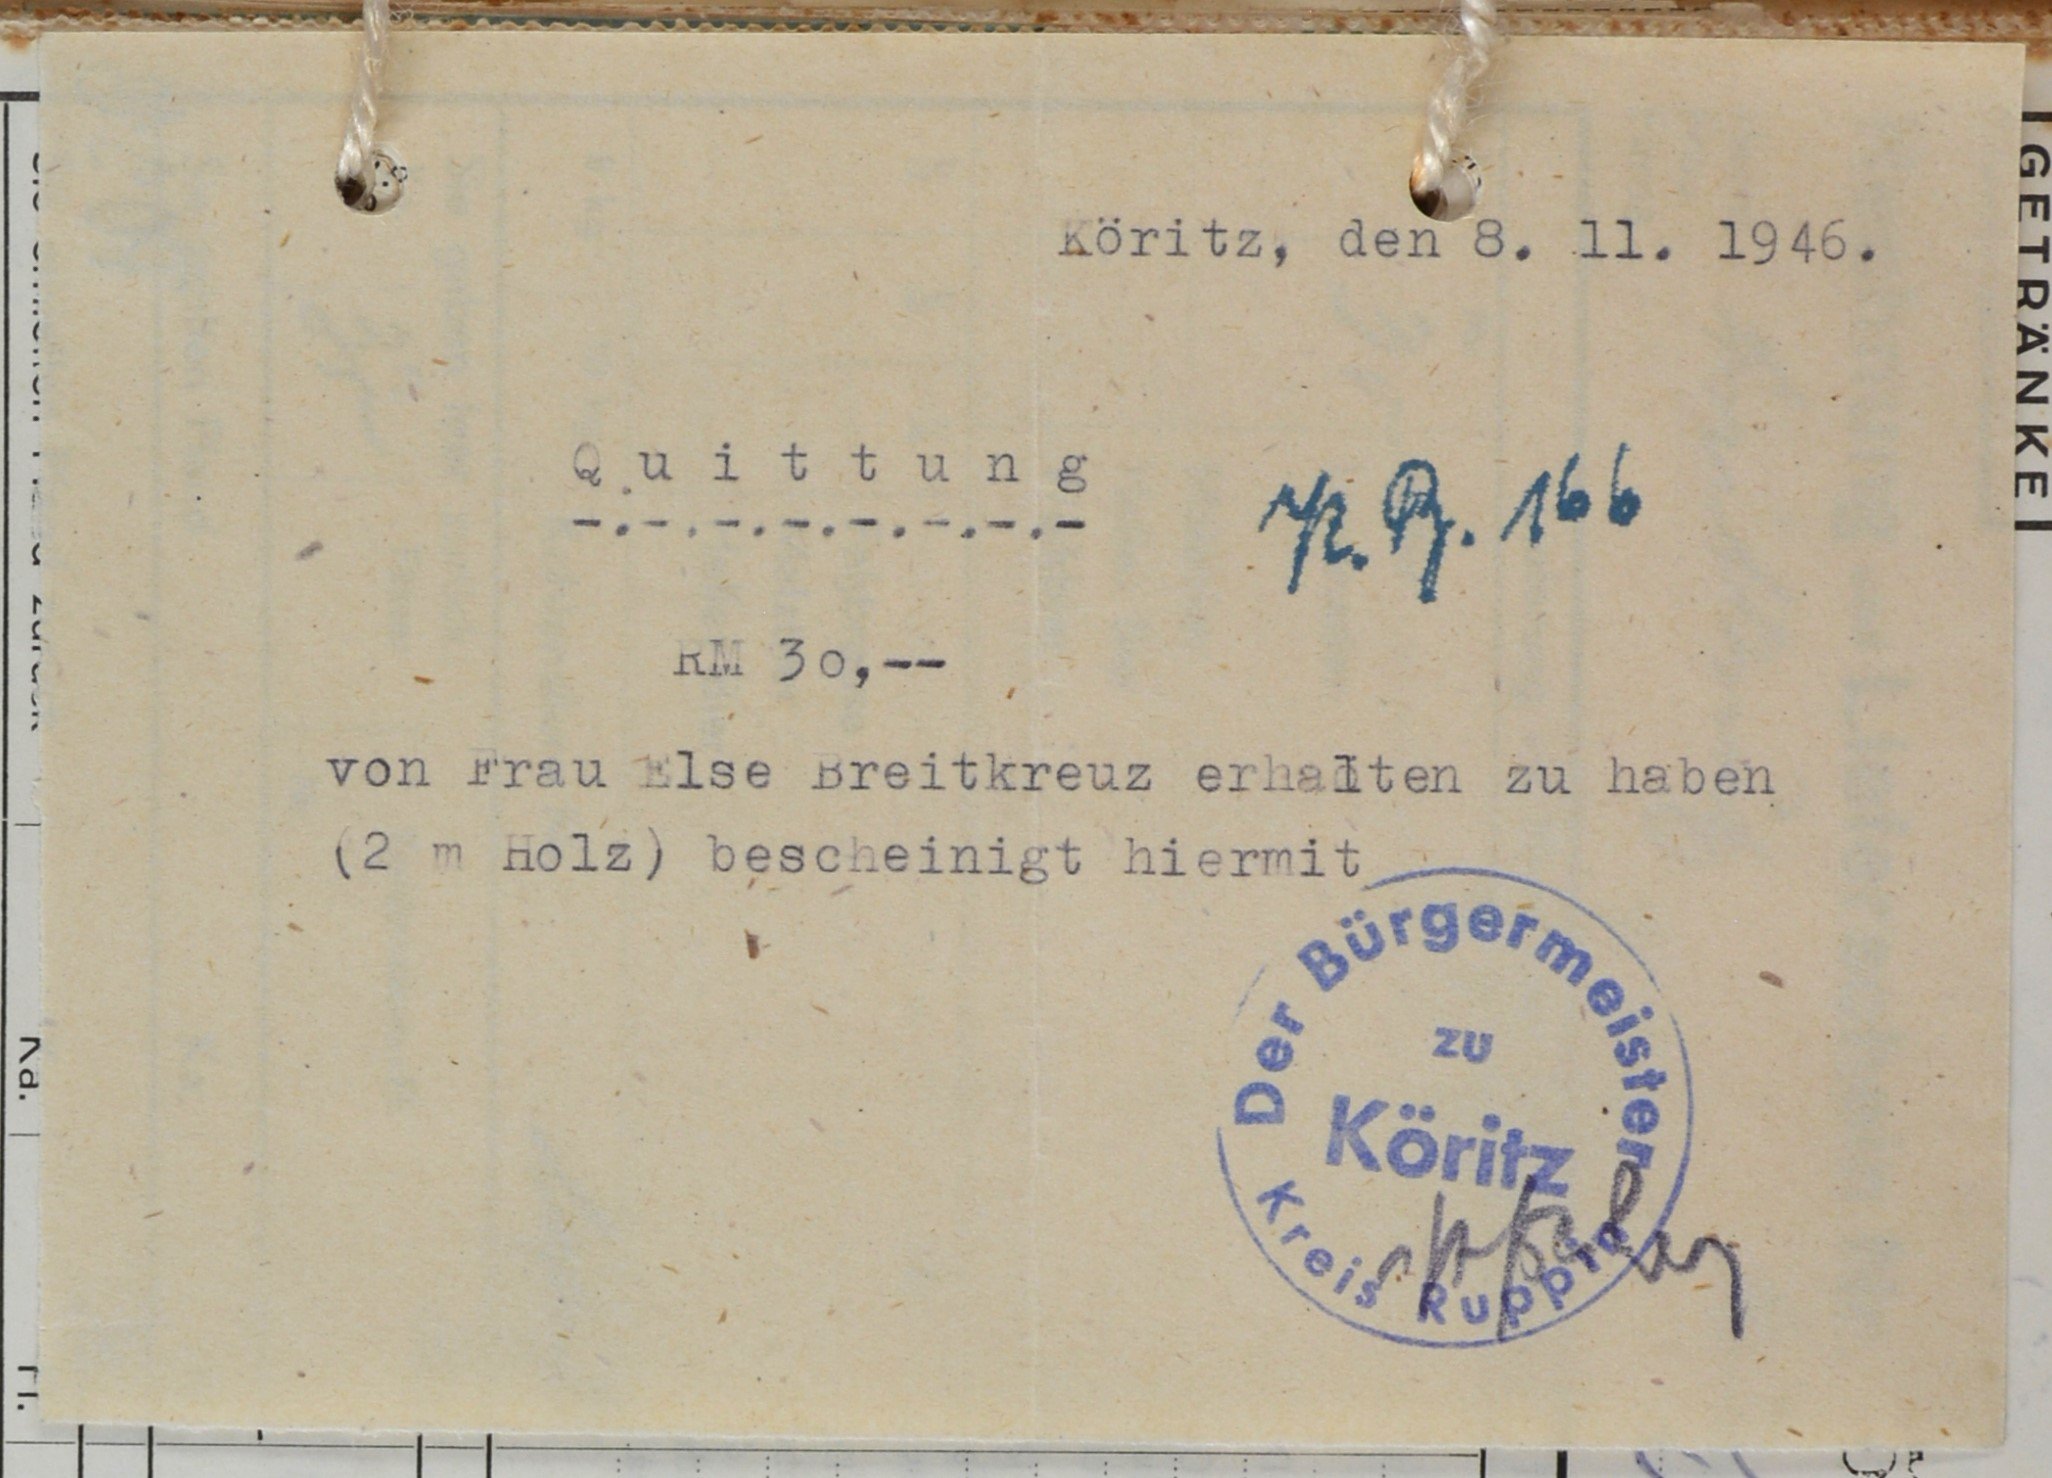 Quittung von dem Bürgermeisteramt zu Köritz für Wilhelm Breitkreuz (DDR Geschichtsmuseum im Dokumentationszentrum Perleberg CC BY-SA)